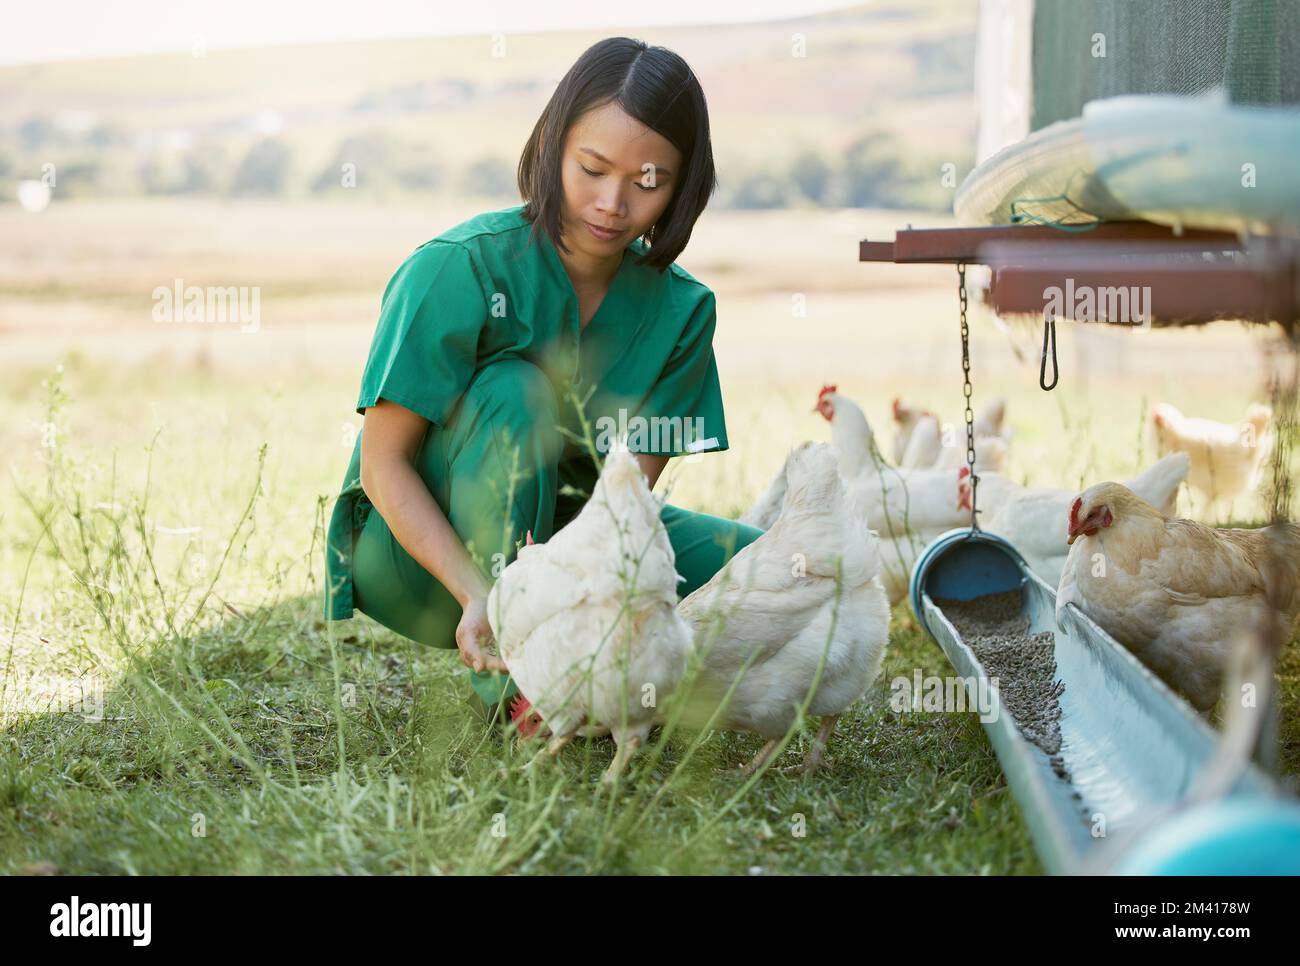 Agriculture, soin des animaux et femme asiatique avec poulet pour les examens médicaux, d'inspection et de santé. Ferme de campagne, soins vétérinaires et vétérinaire féminin Banque D'Images